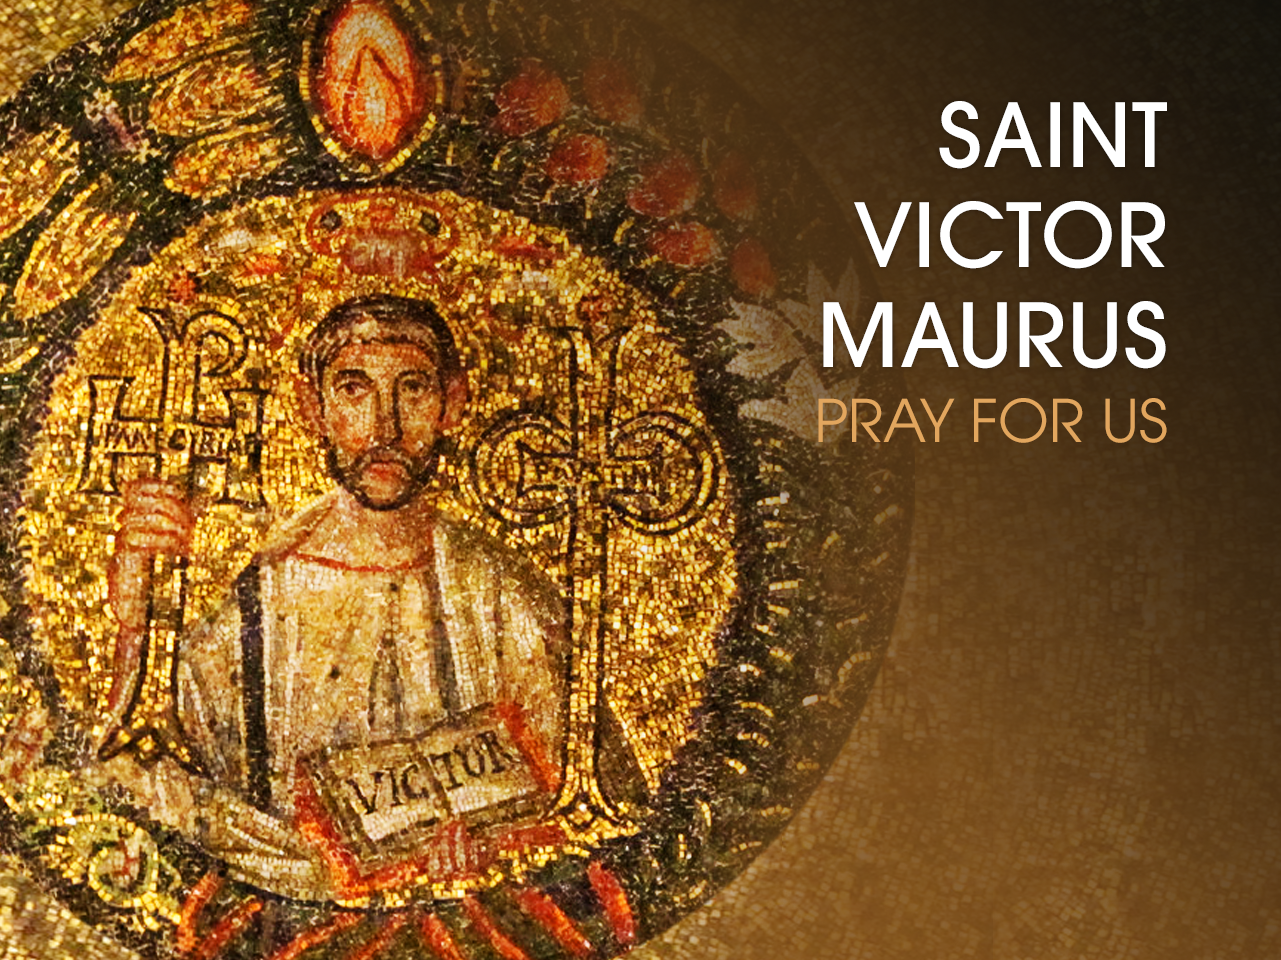 St. Victor Maurus